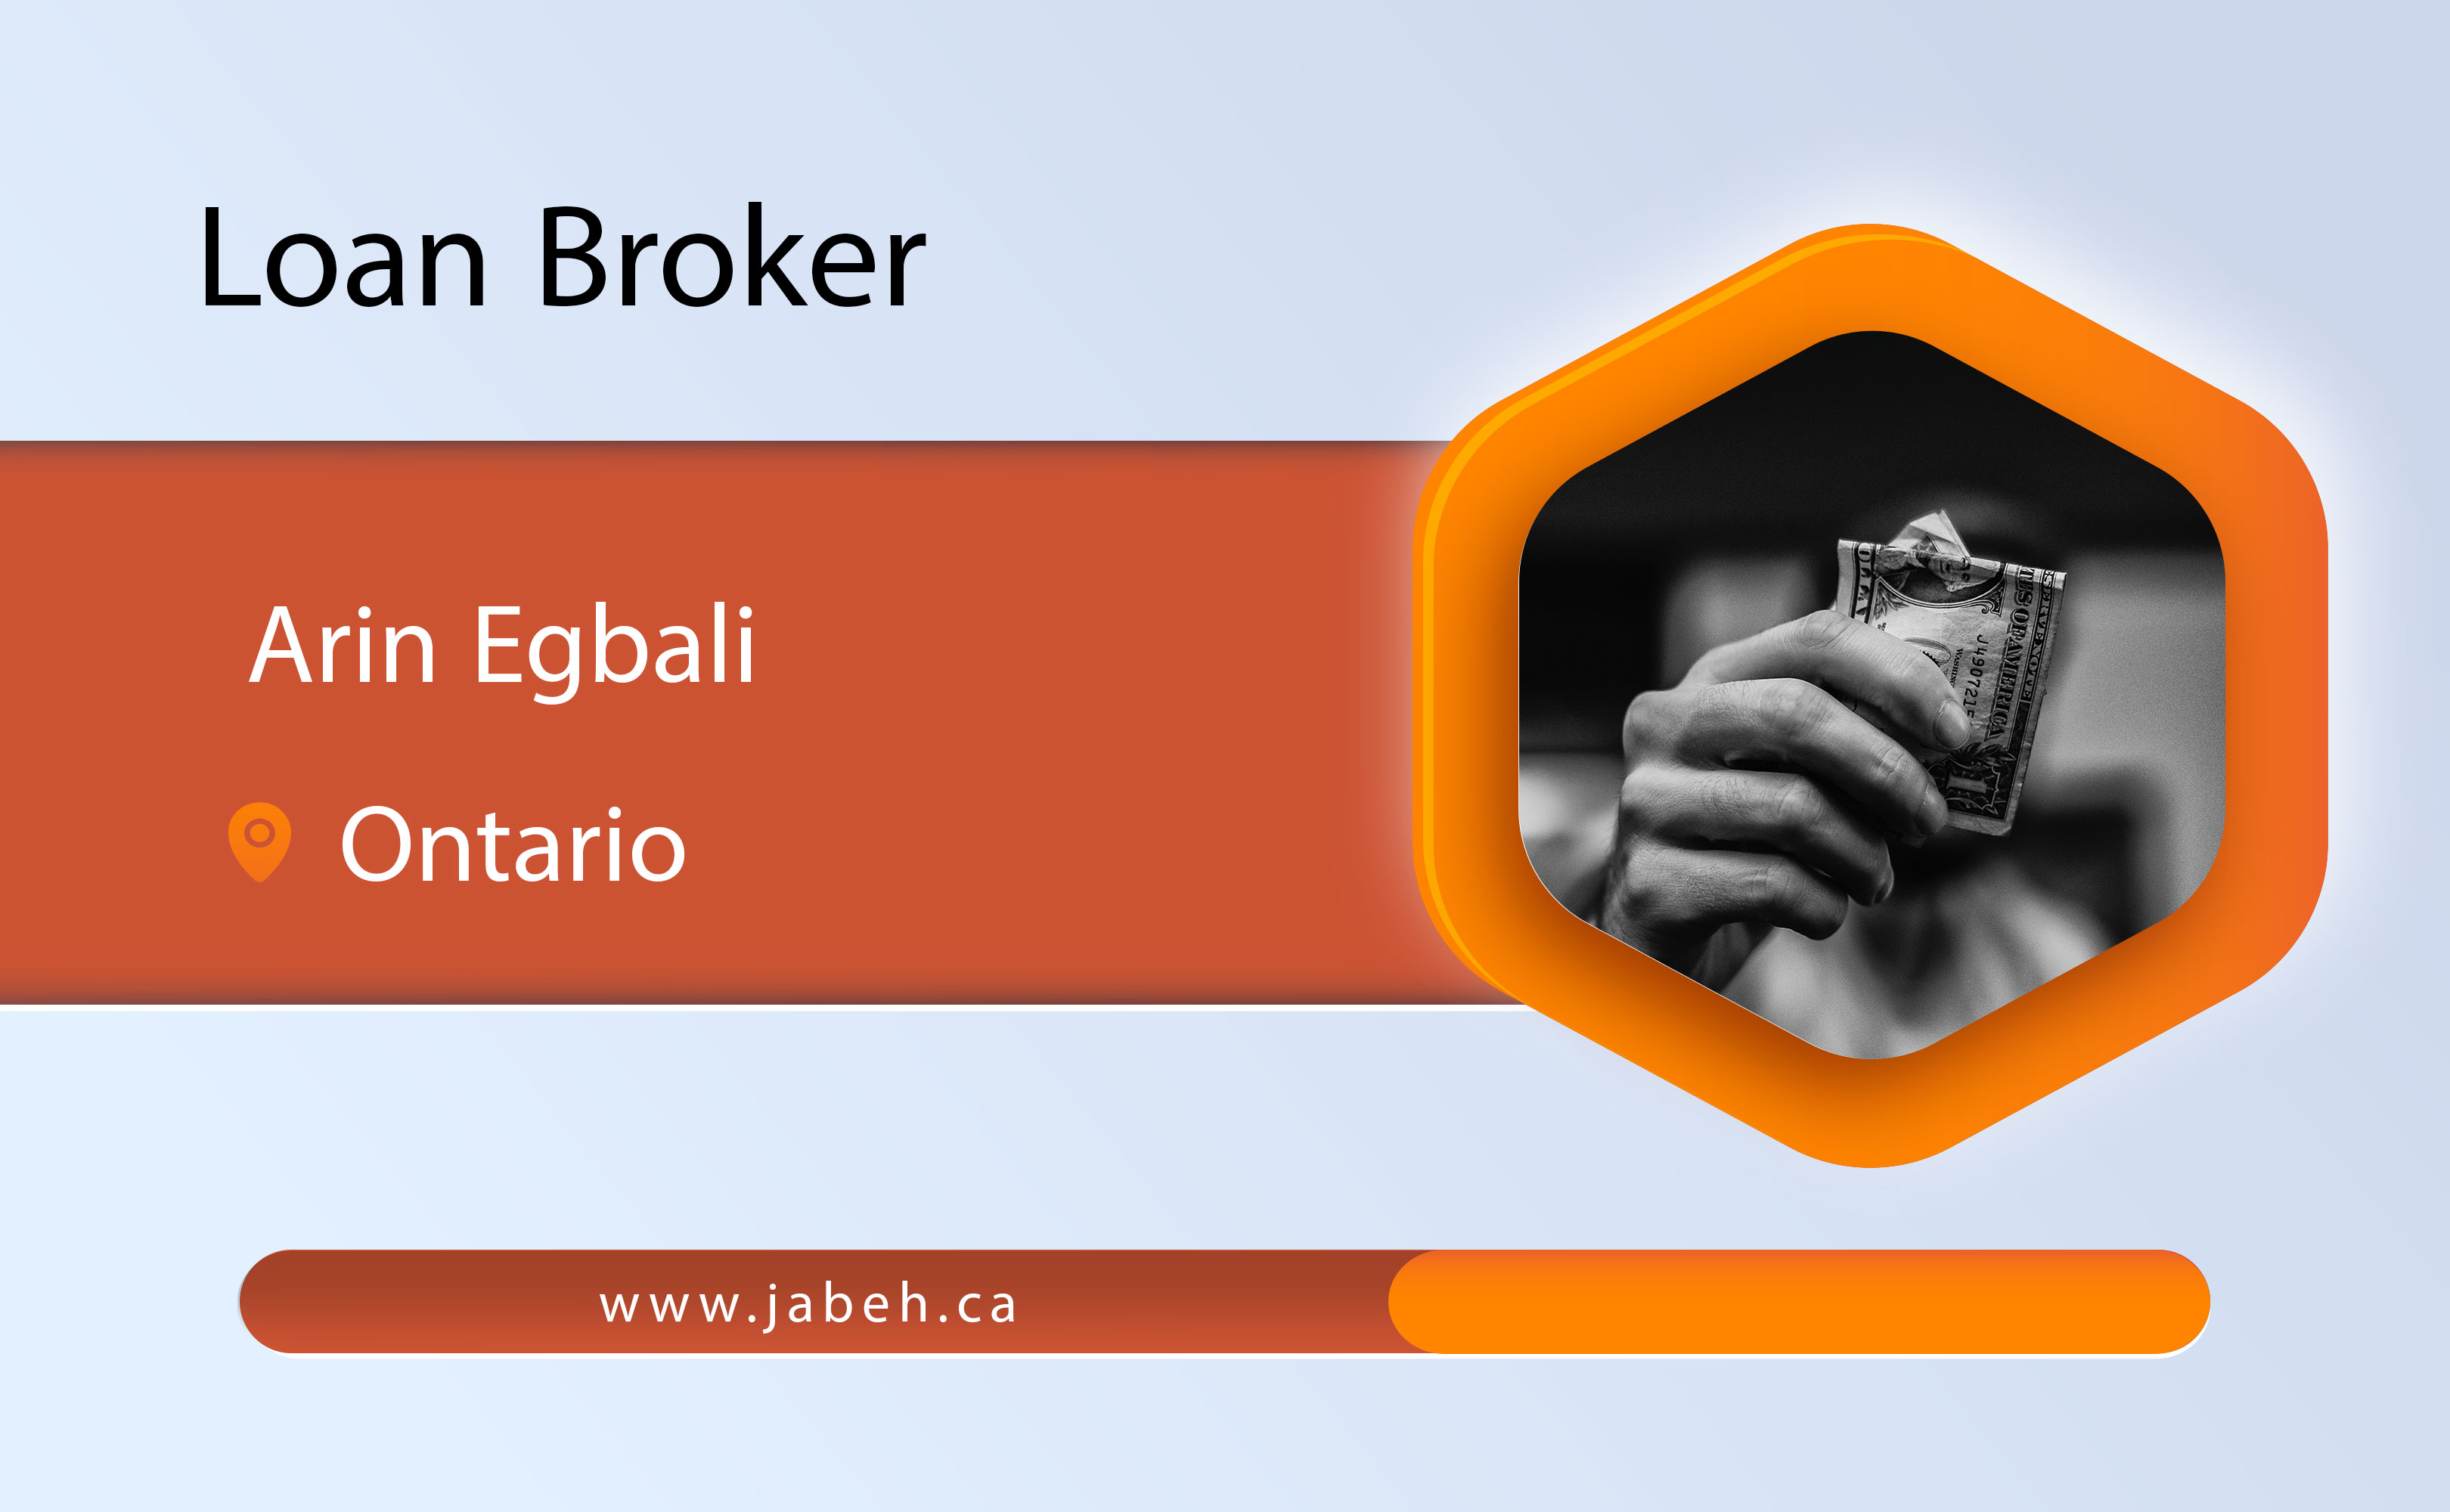 Iranian loan broker Arin Iqbali in Ontario